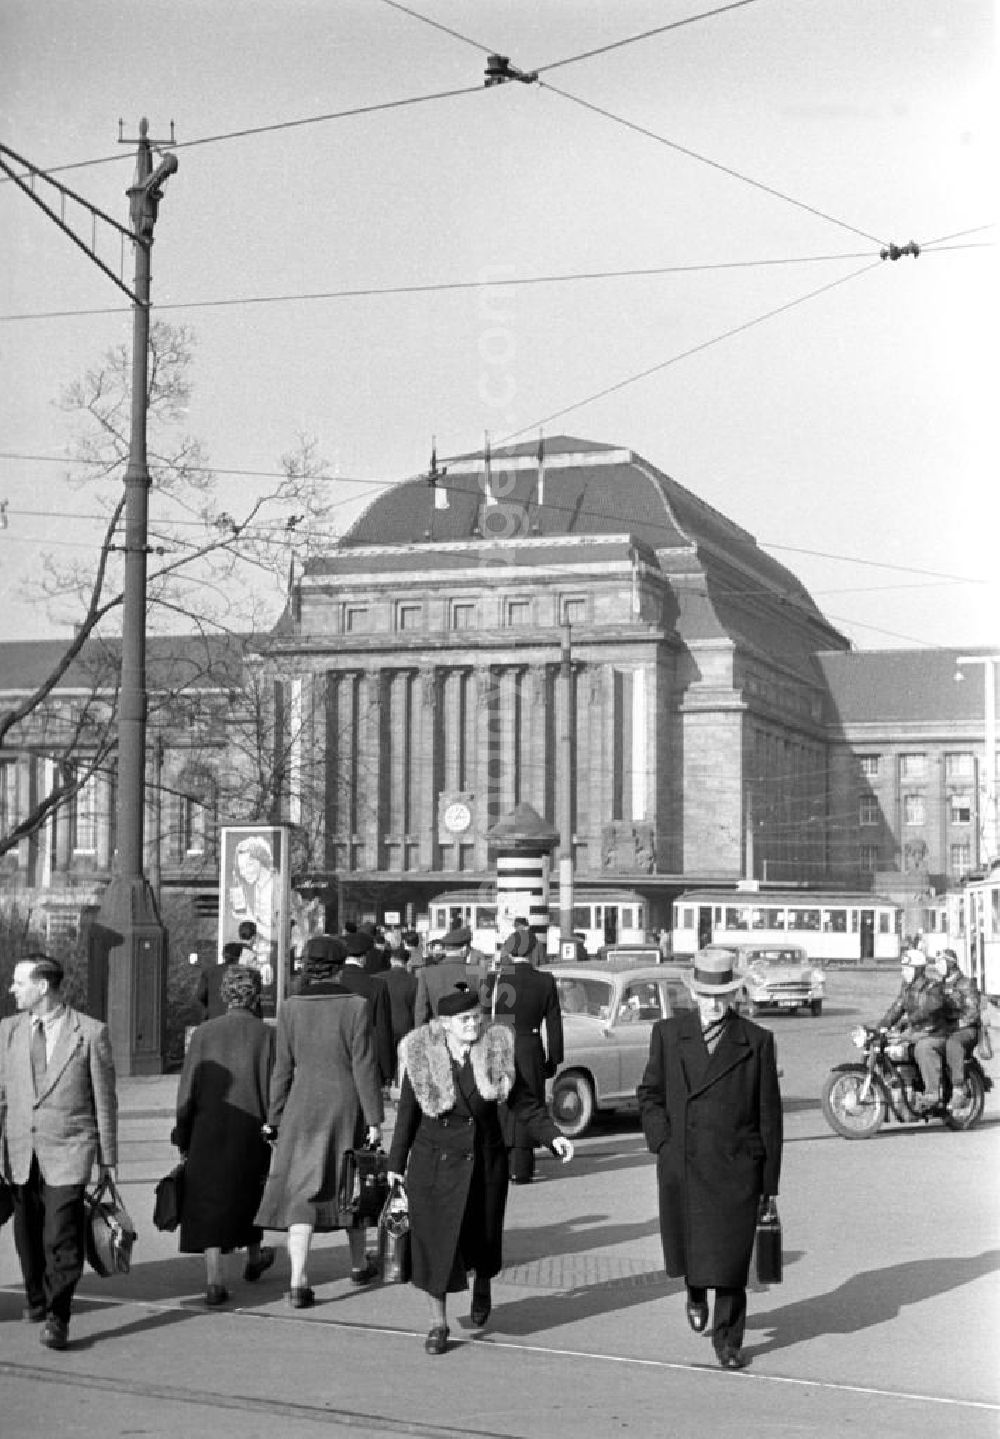 GDR photo archive: Leipzig - Reger Verkehr herrscht vor dem Hauptbahnhof in Leipzig am Platz der Republik (heute Willy-Brandt-Platz). Der Bahnhof wurde nach 13-jähriger Bauzeit am 4. Dezember 1915 eingeweiht und ist seither ein Wahrzeichen der Stadt.